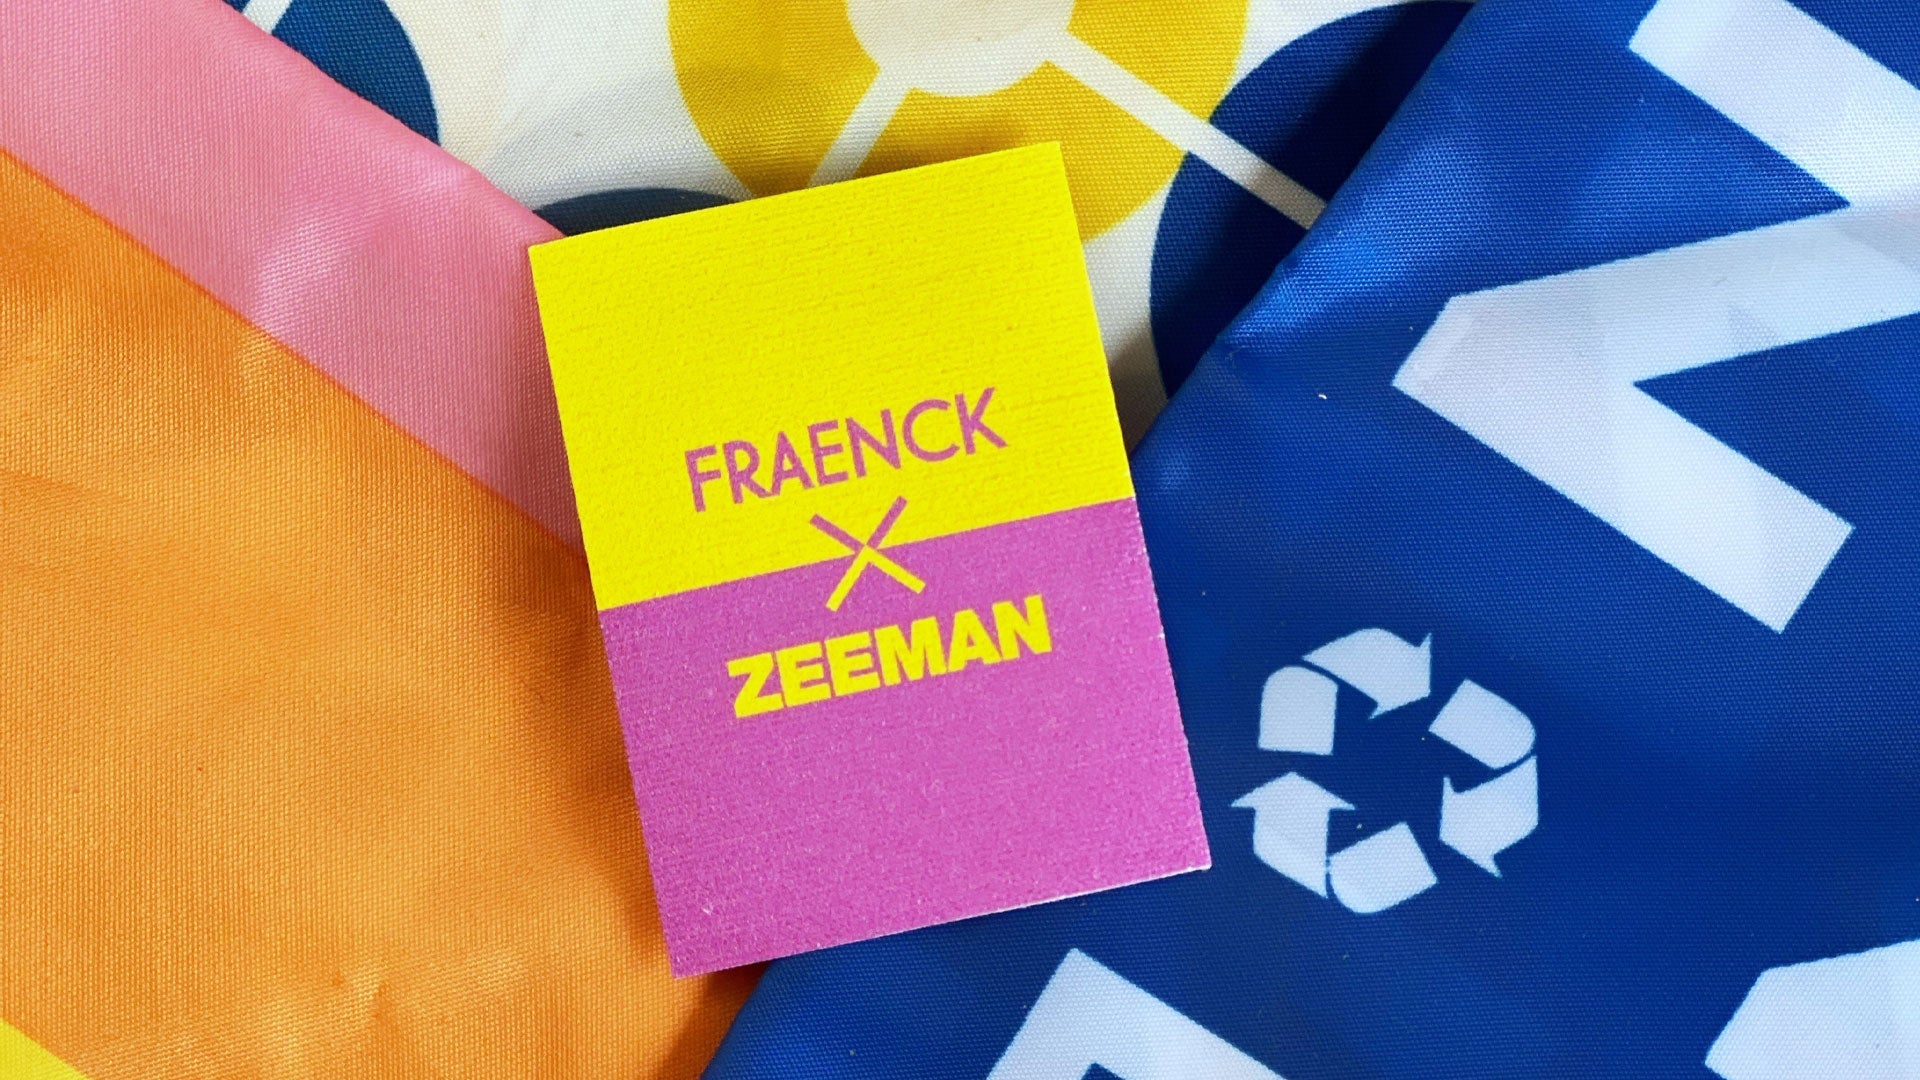 Zeeman X Fraenck - Fraenck